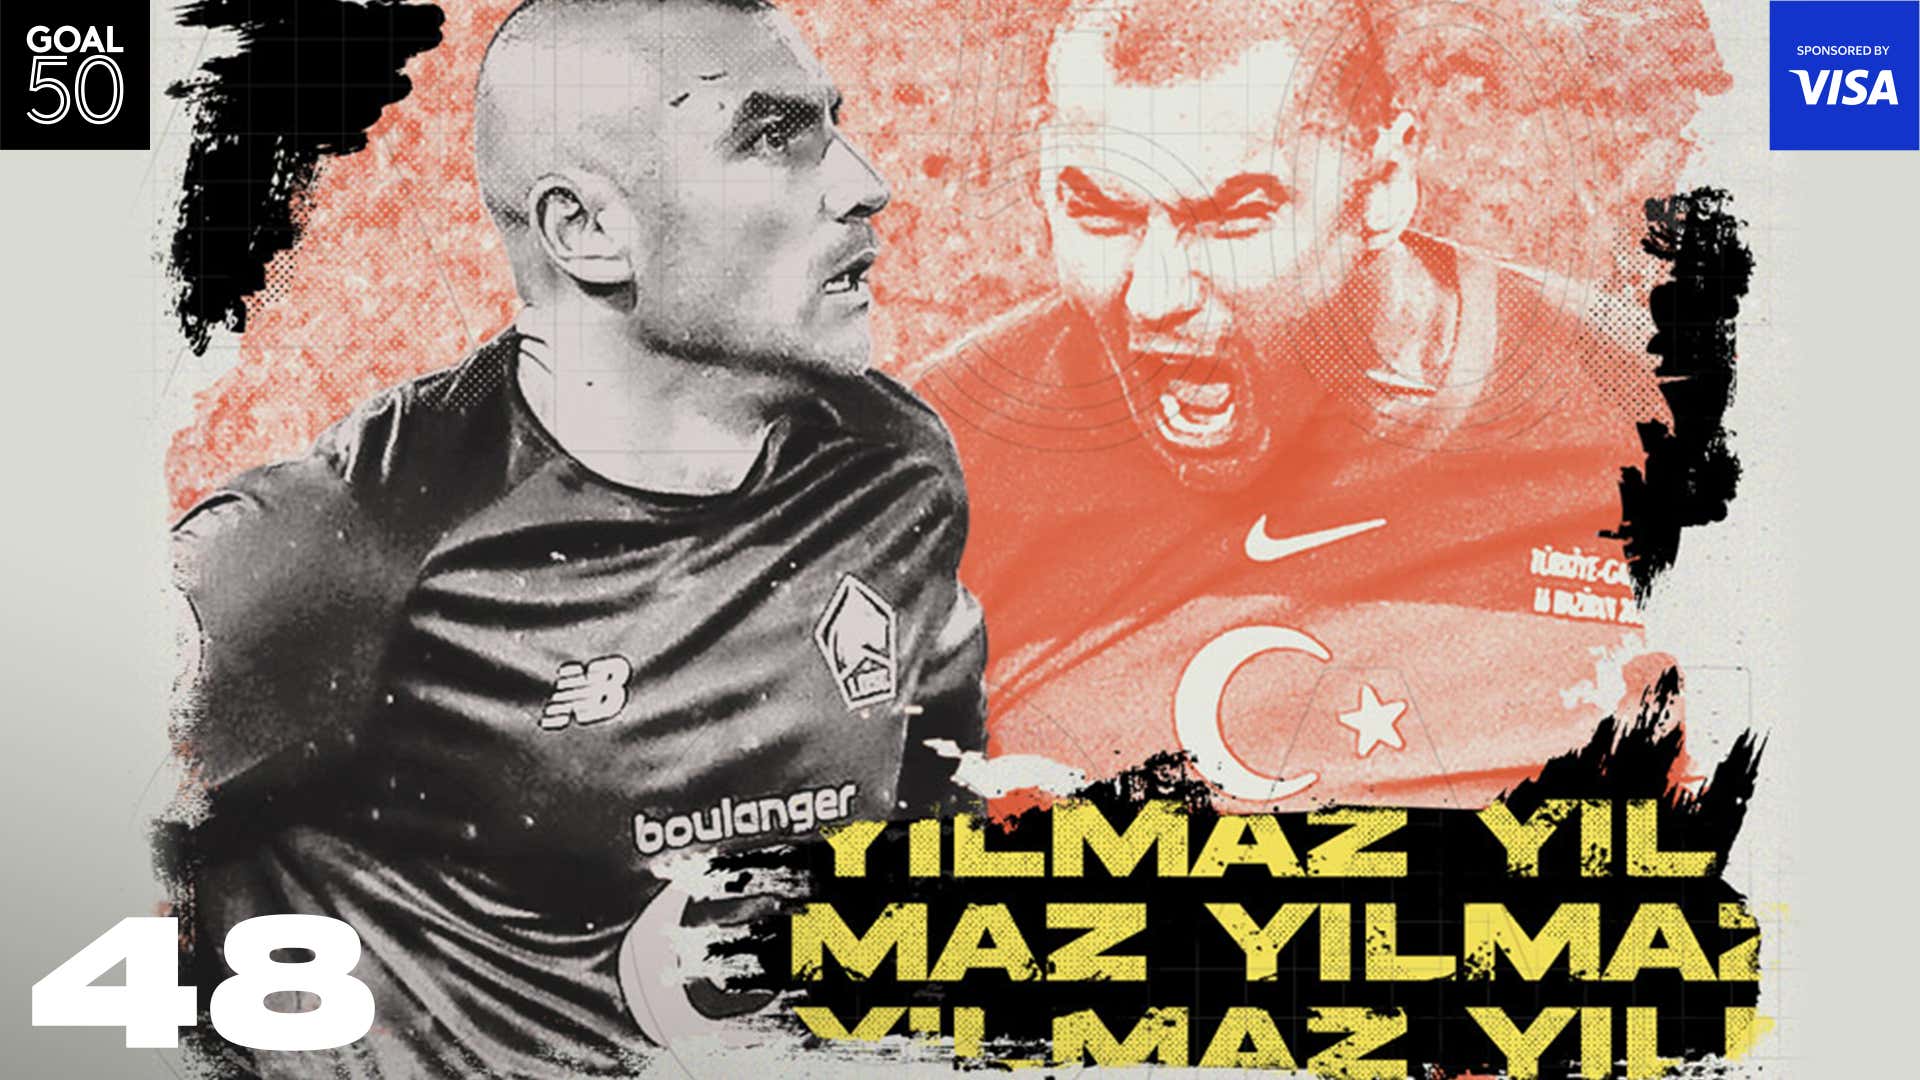 Yilmaz Goal50 2021